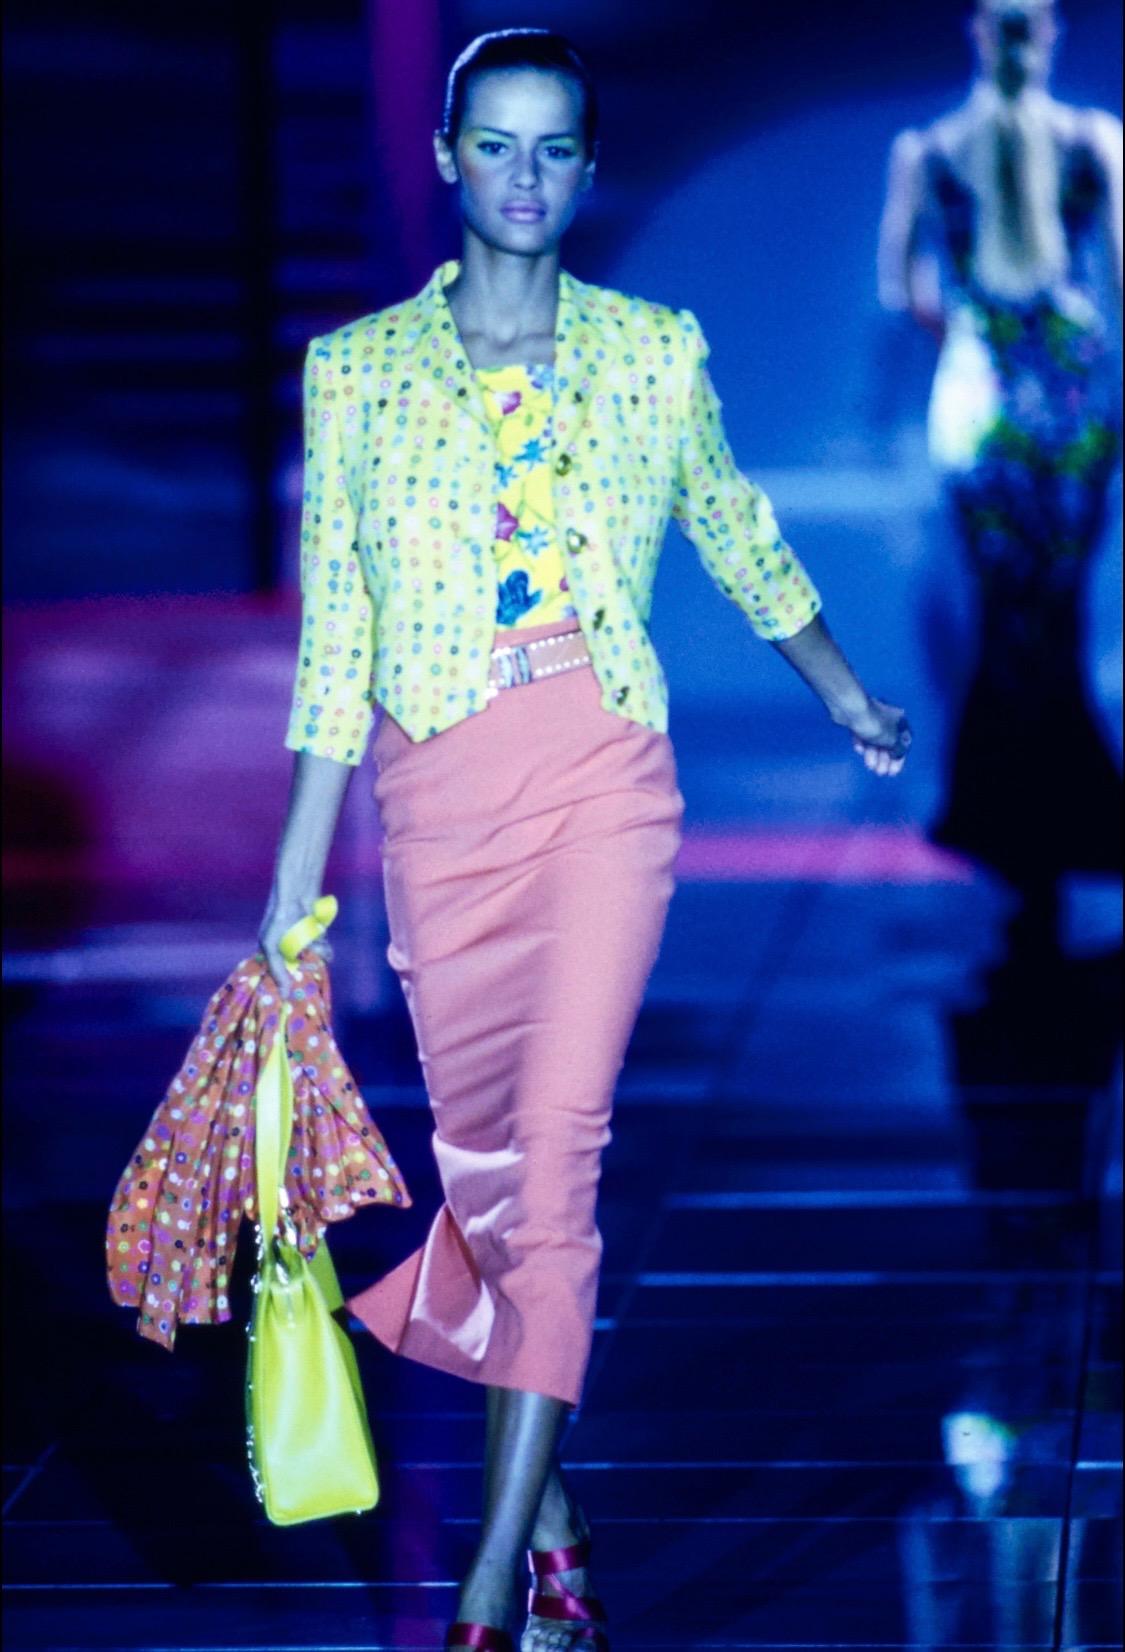 Wir präsentieren einen atemberaubenden gelben, geblümten Blazer von Gianni Versace Couture, entworfen von Gianni Versace. Dieser Blazer aus der Kollektion Frühjahr/Sommer 1993 wurde erstmals in Look 46 von Nadège du Bospertus gezeigt. Dieser